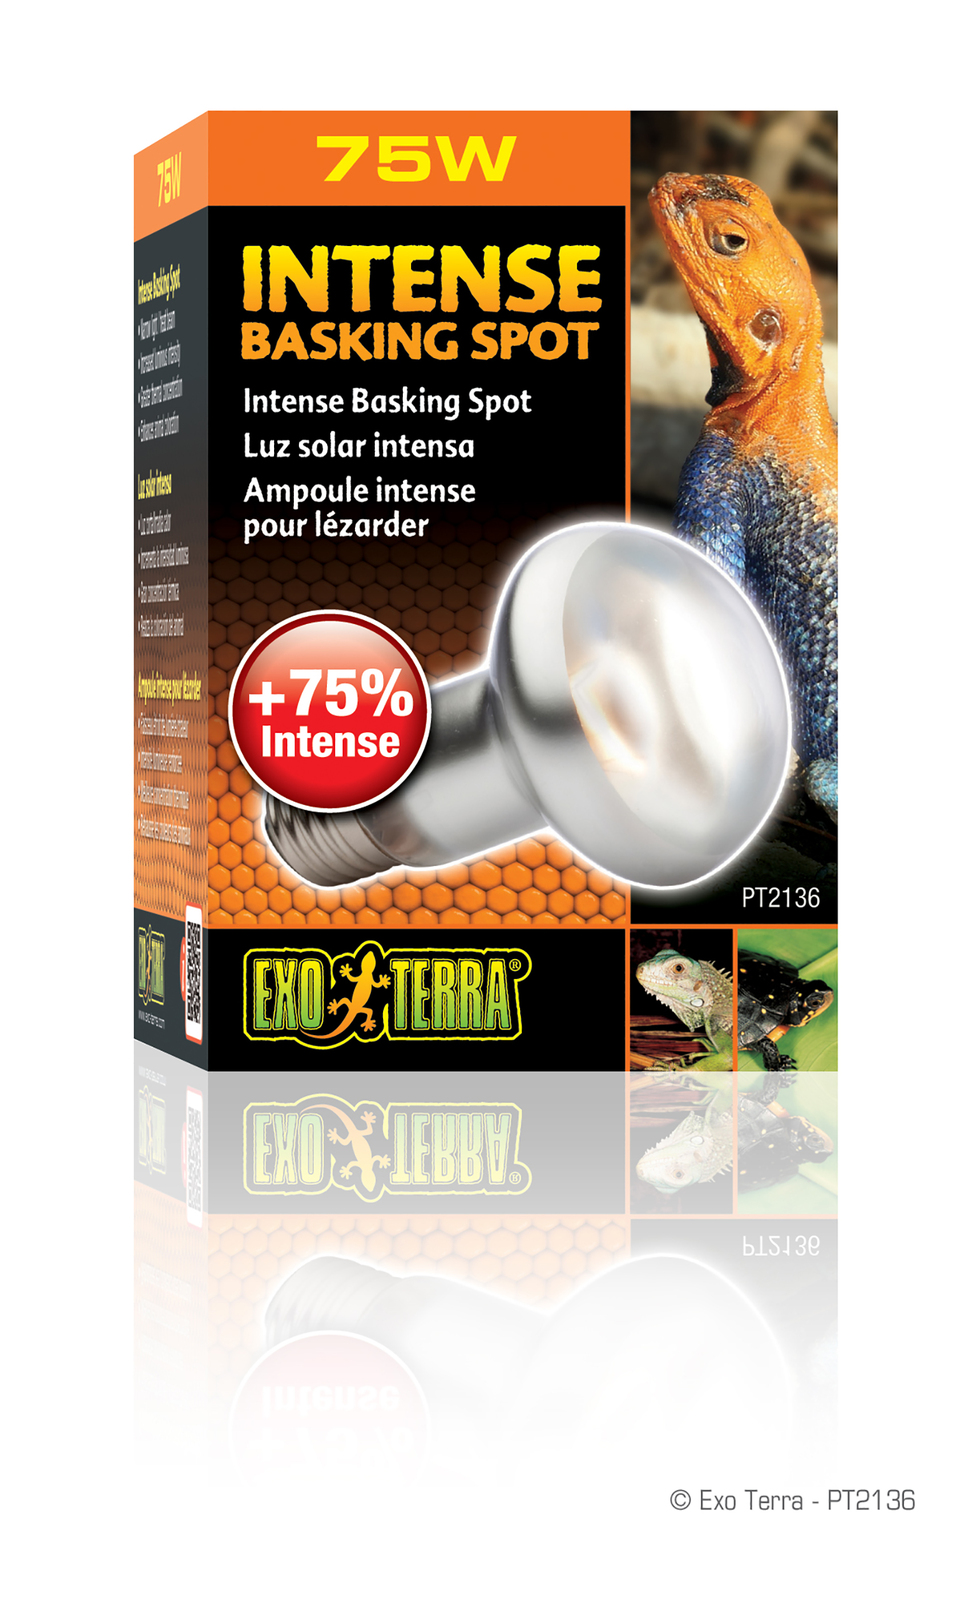 Exo Terra Reptile Swamp Basking Spot Lamp Glo Splash Resistant Bulb 75 W Light 